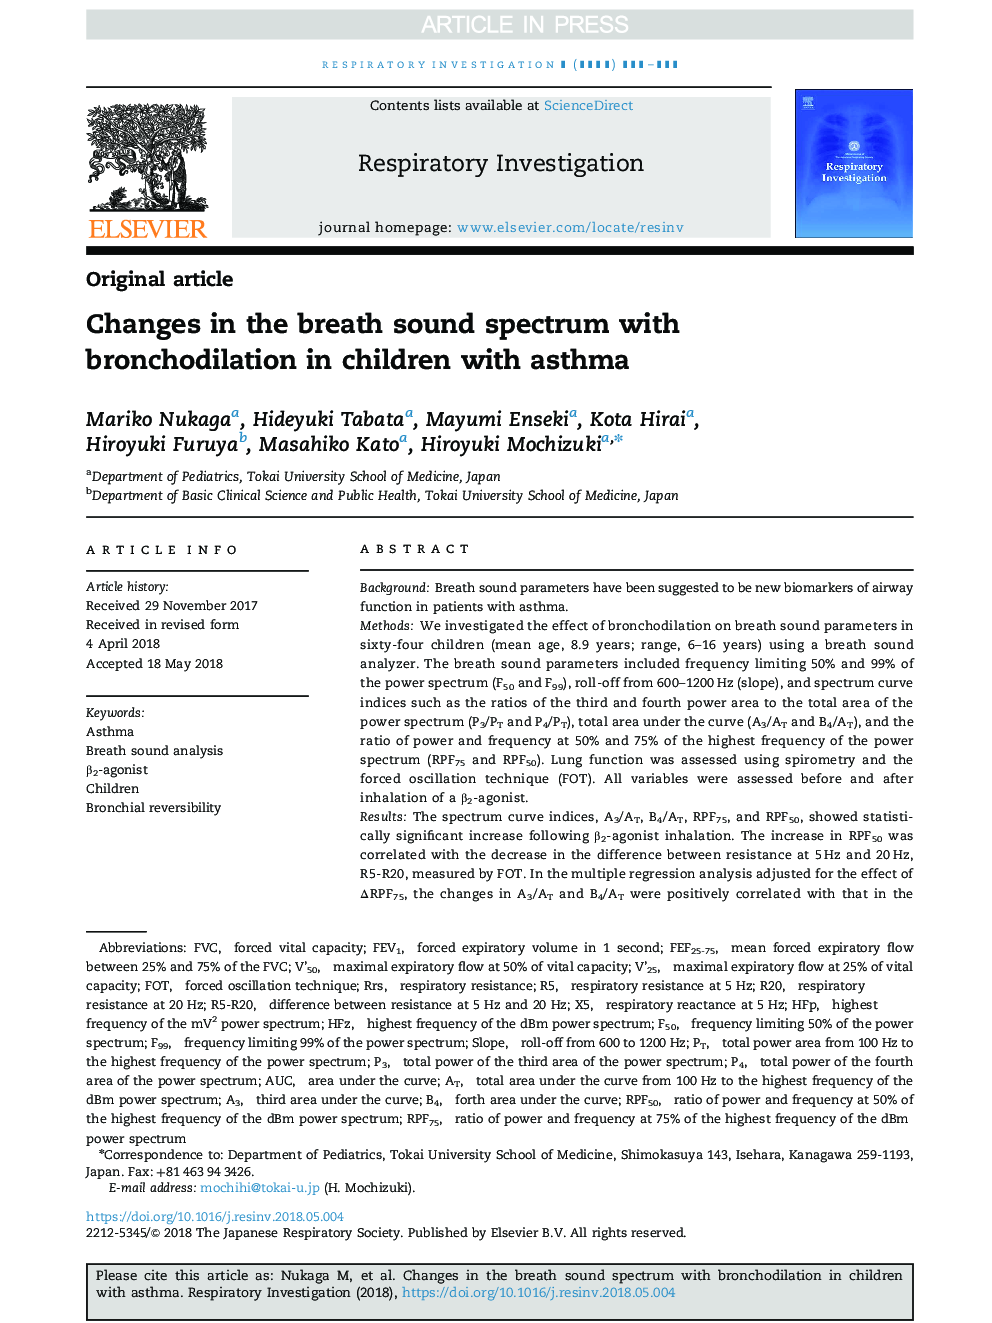 تغییرات طیف صدا در تنفس با برونکودیلاتا در کودکان مبتلا به آسم